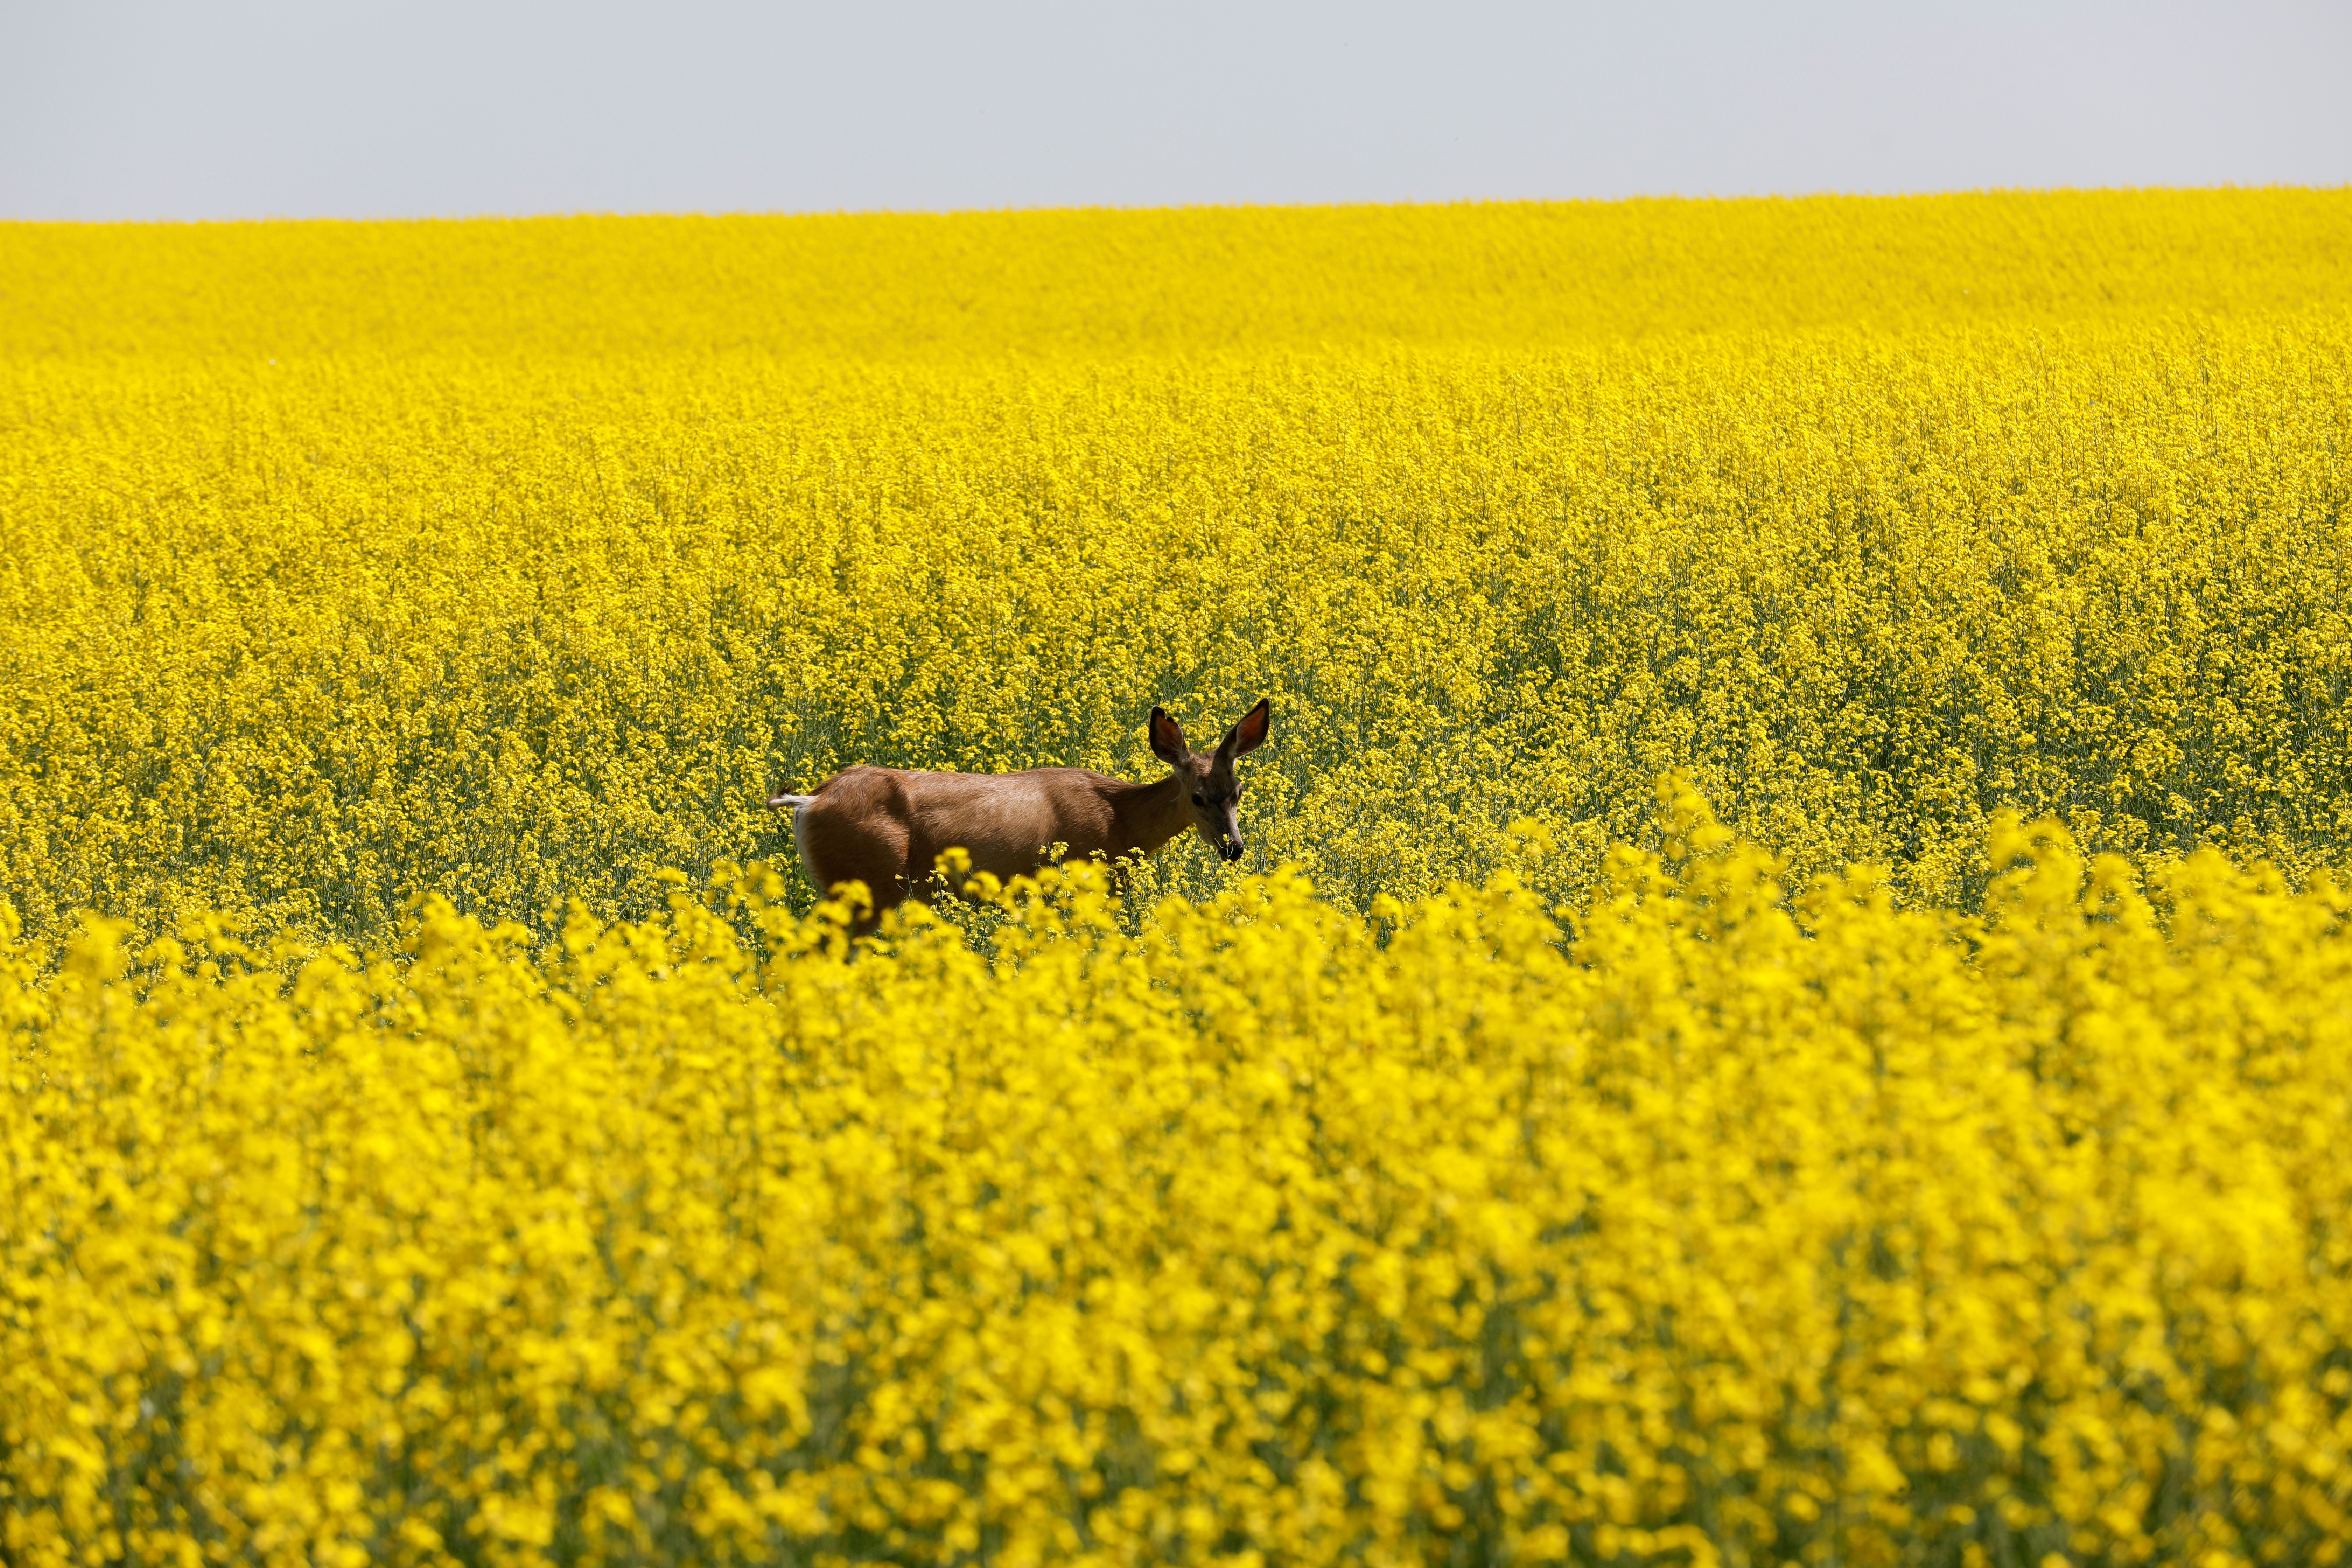 A deer feeds in a Western Canadian canola field in full bloom in 2019